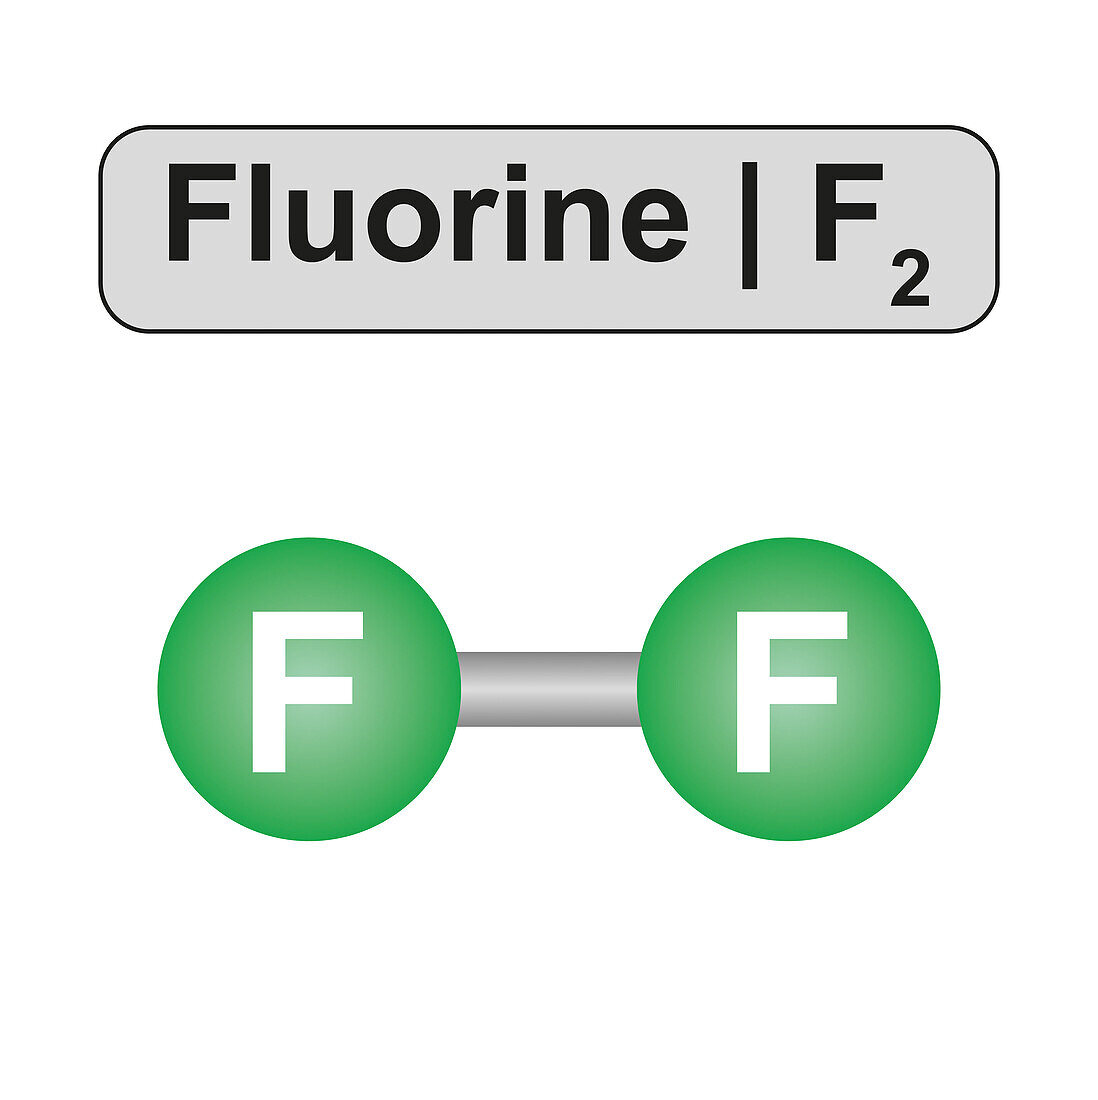 Fluorine molecule, illustration